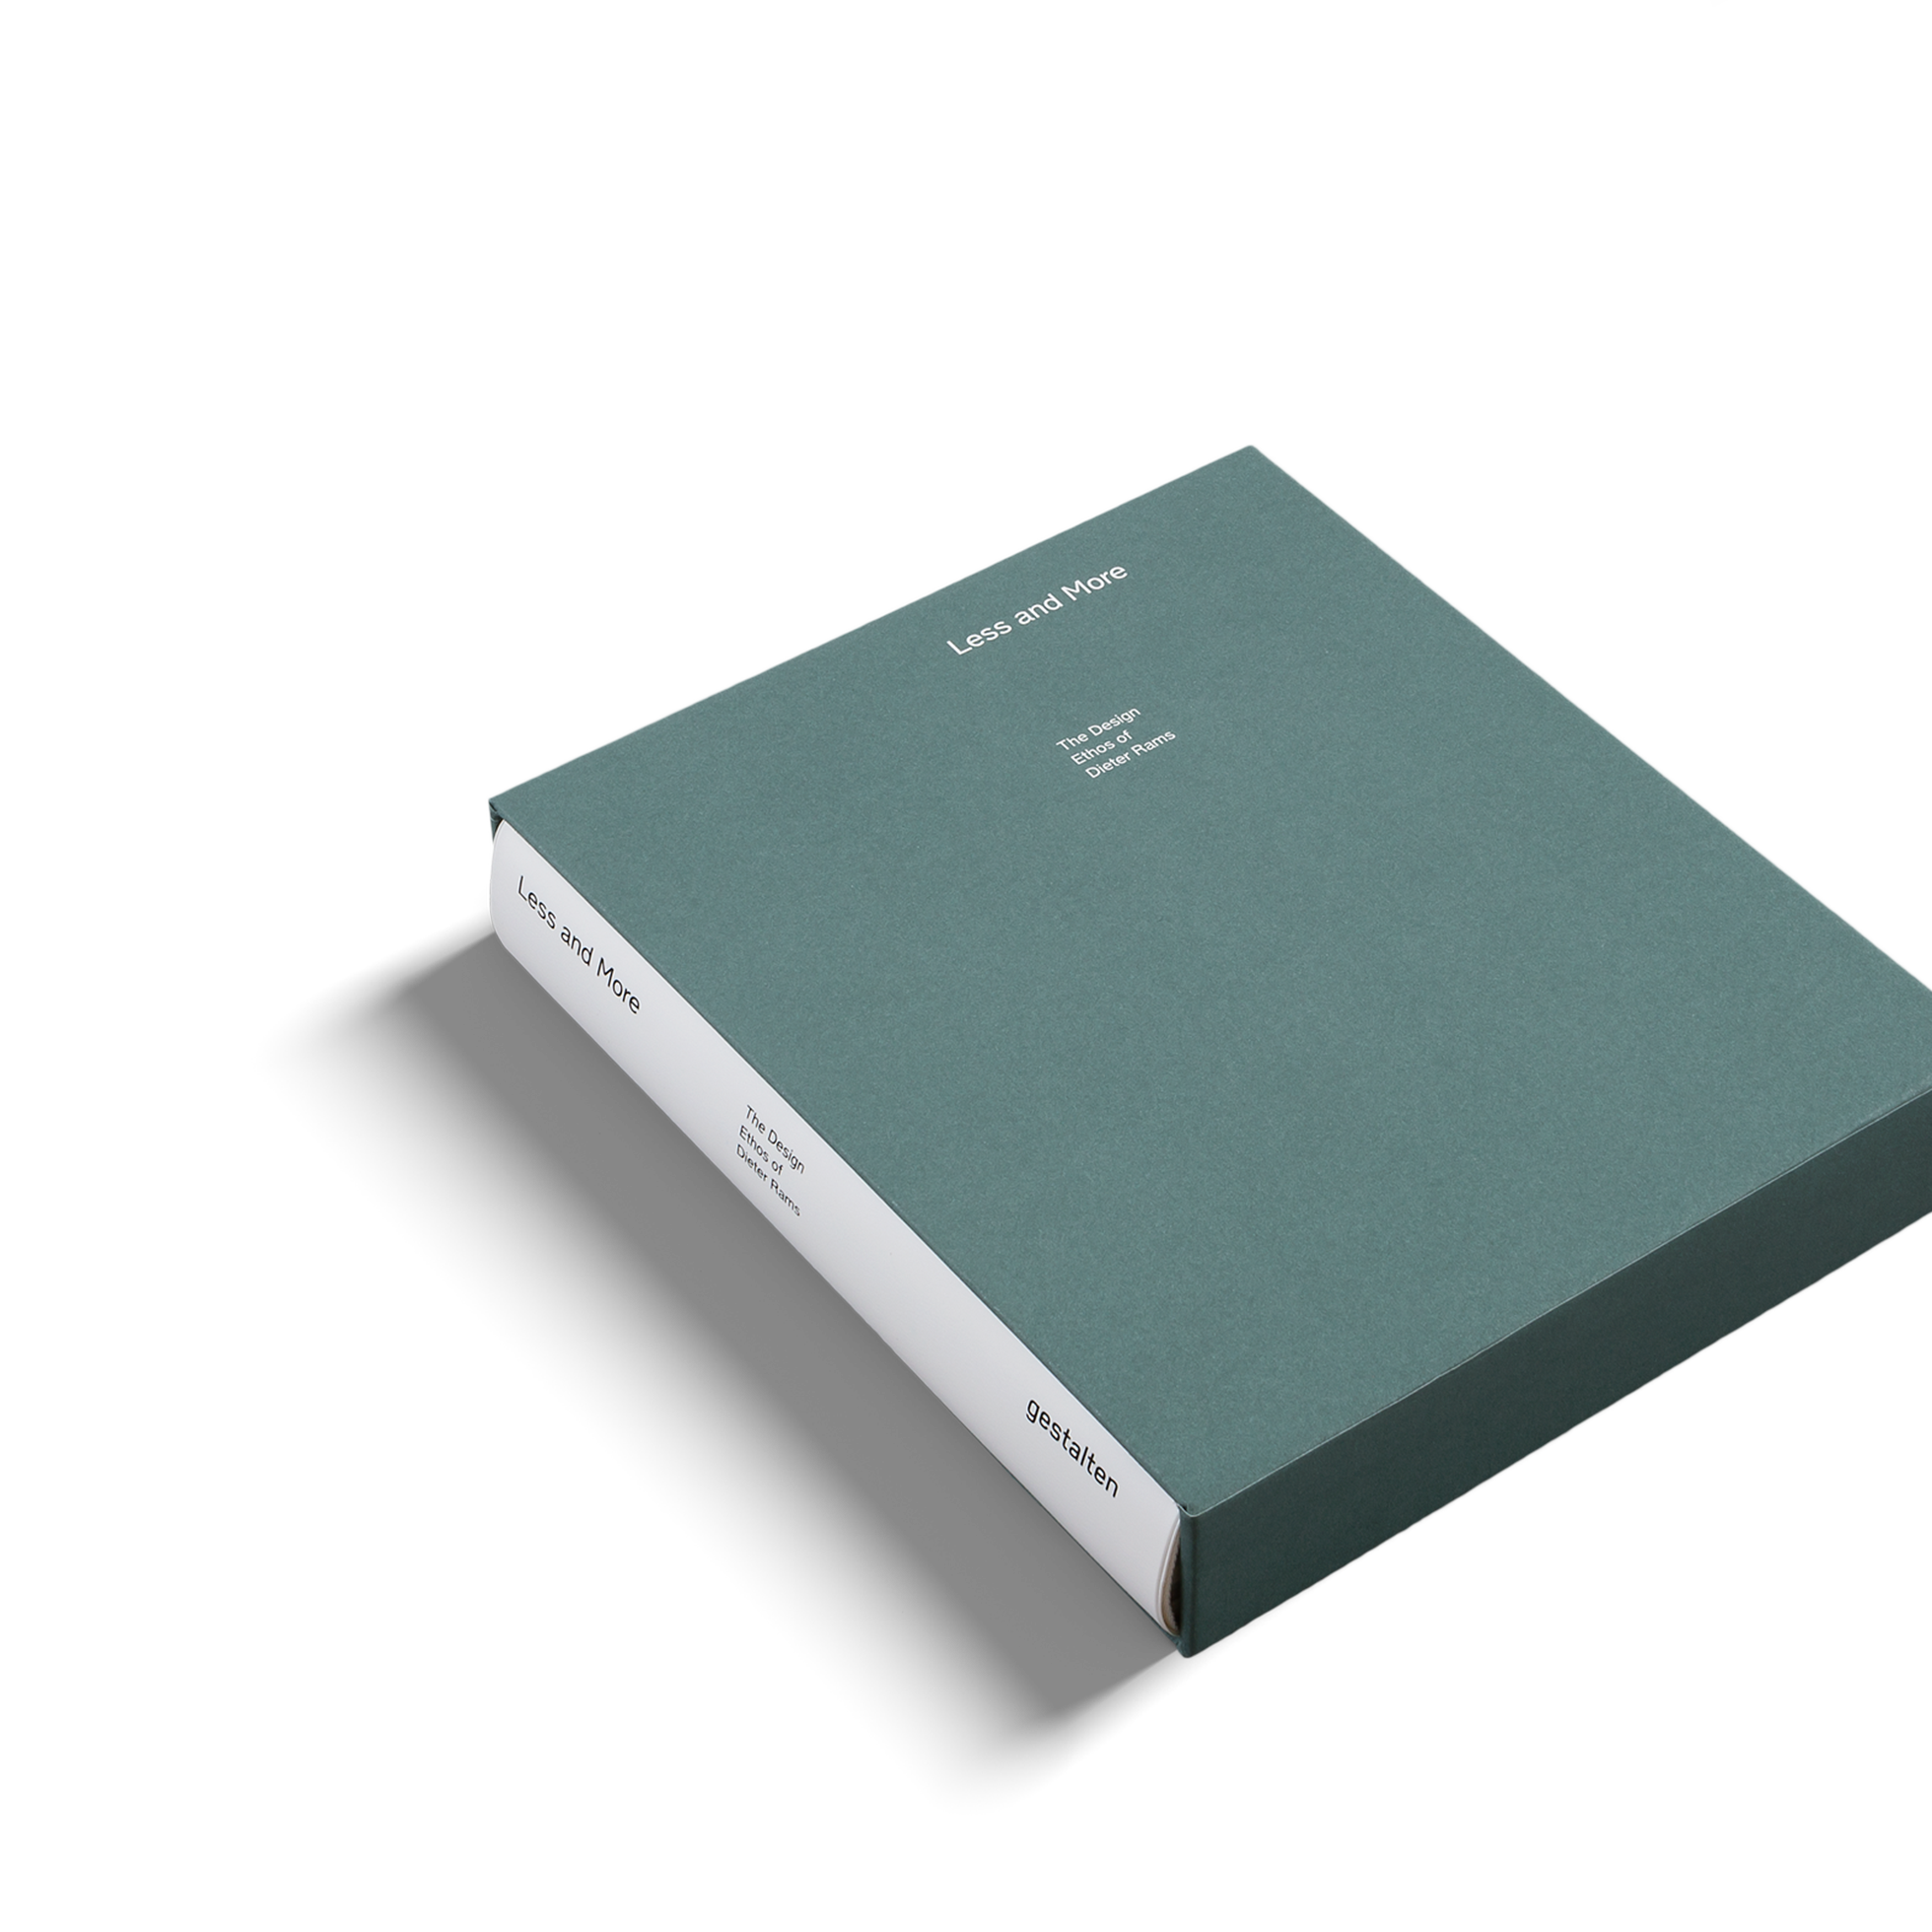 LESS AND MORE | Design Ethos | BUCH | Dieter Rams | Gestalten Verlag